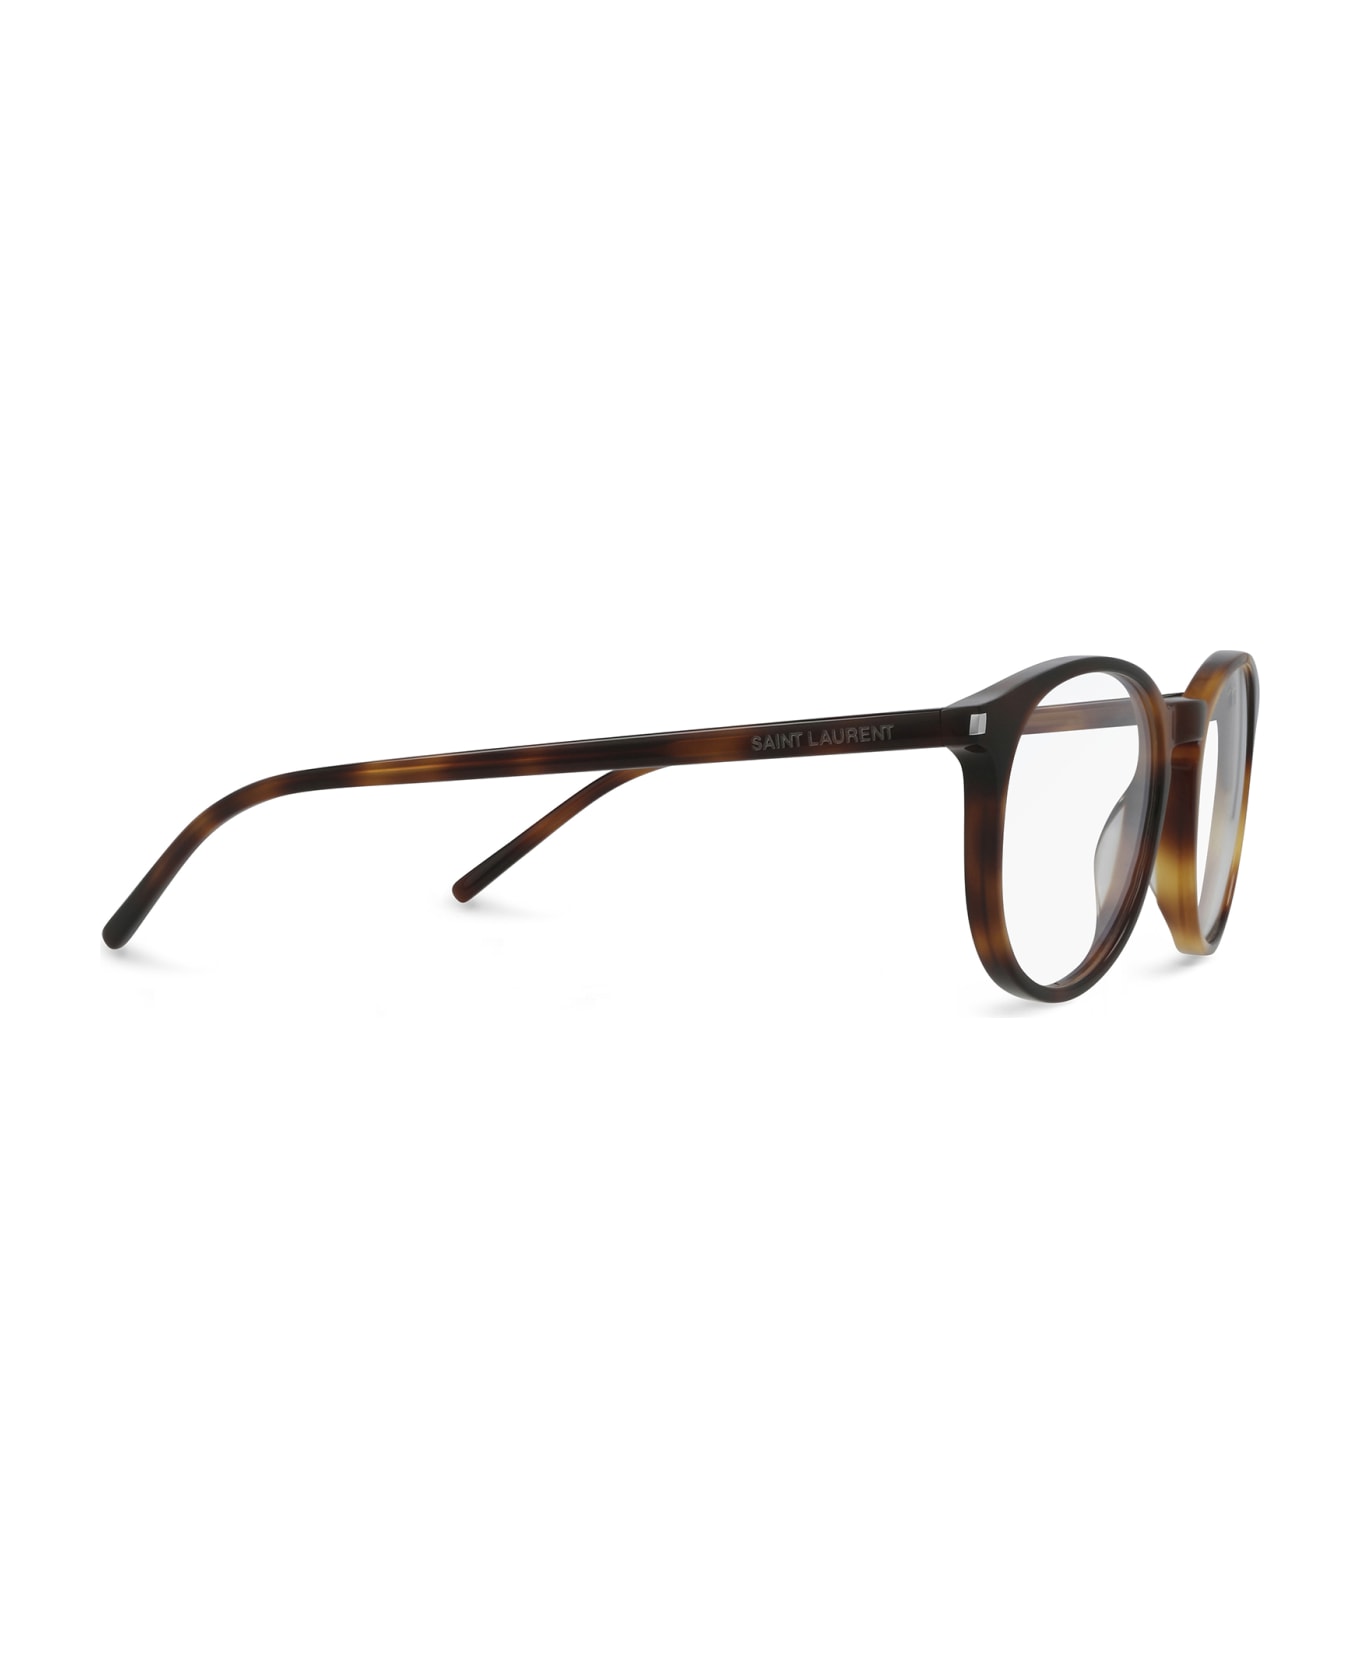 Saint Laurent Eyewear Sl 106 002 Glasses - 002 アイウェア